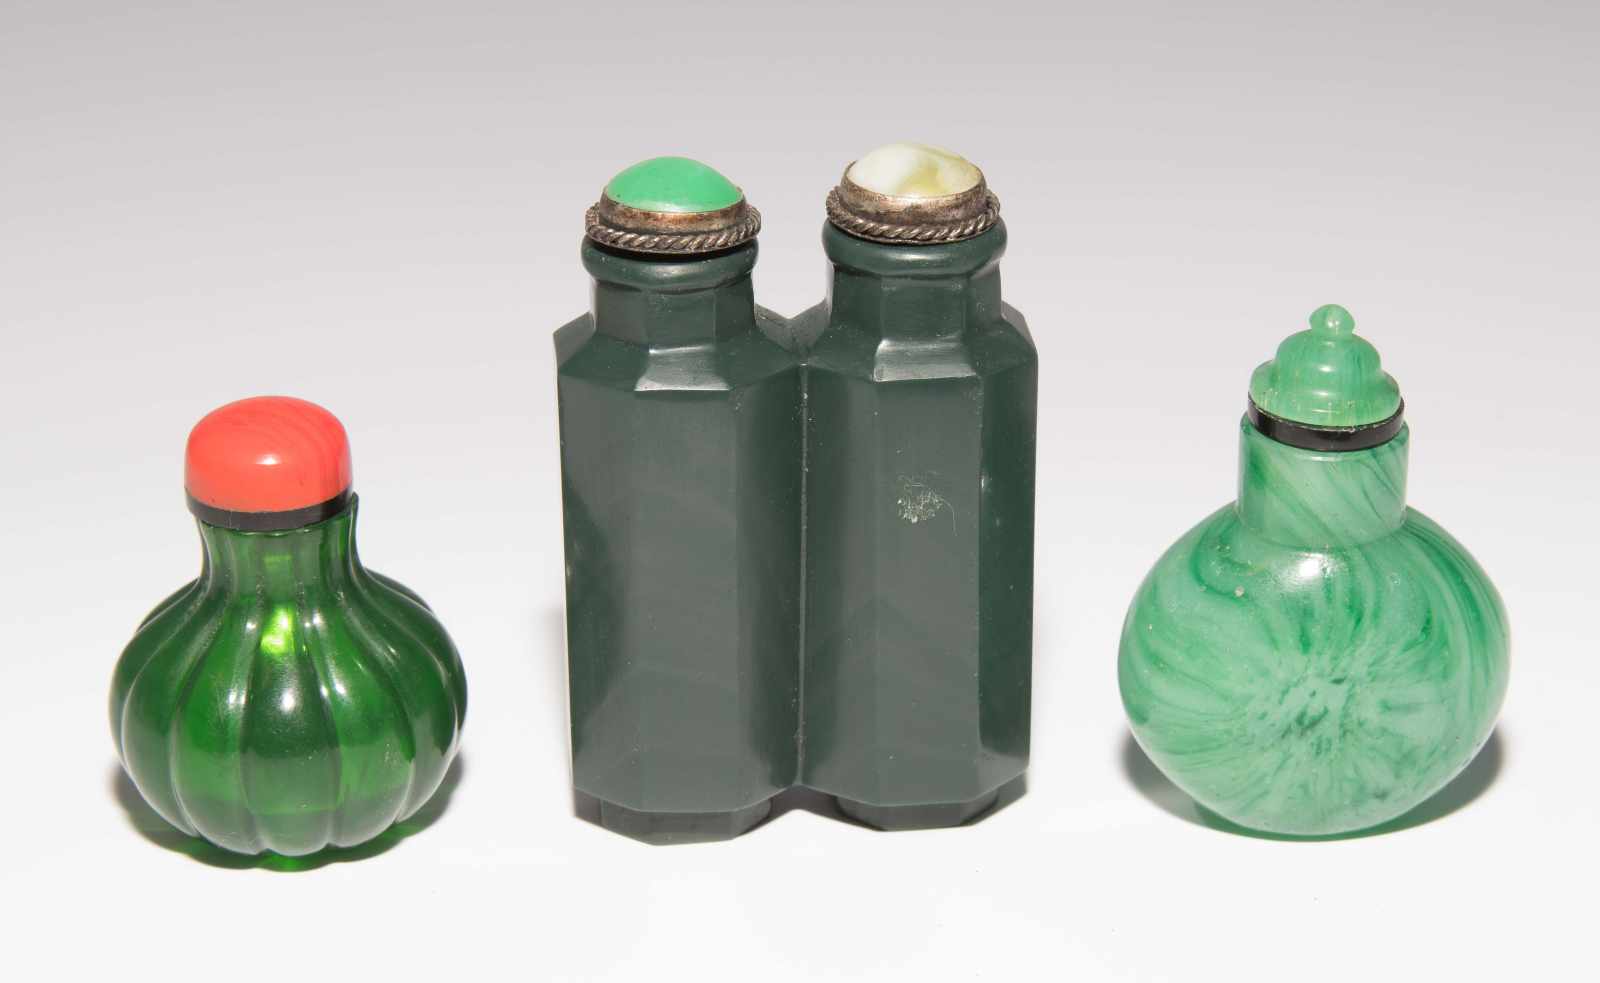 8 Snuff BottlesChina. Drei kleine Snuff Bottles aus transparentem Glas in verschiedenen Grüntonen; - Image 10 of 22